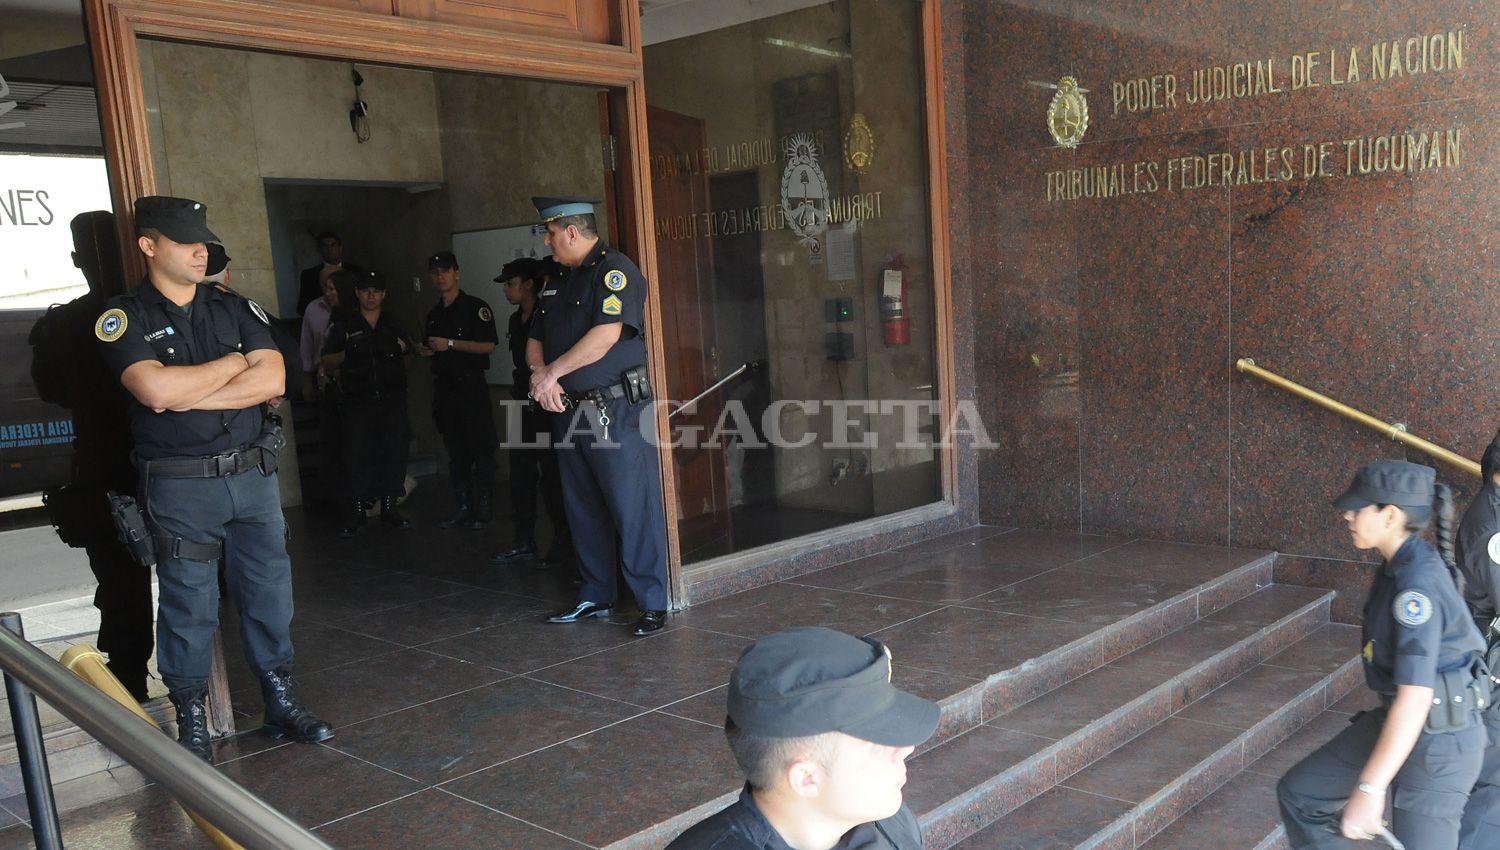 TRIBUNALES FEDERALES. Policías custodian la sede de la Justicia Federal en Tucumán. ARCHIVO